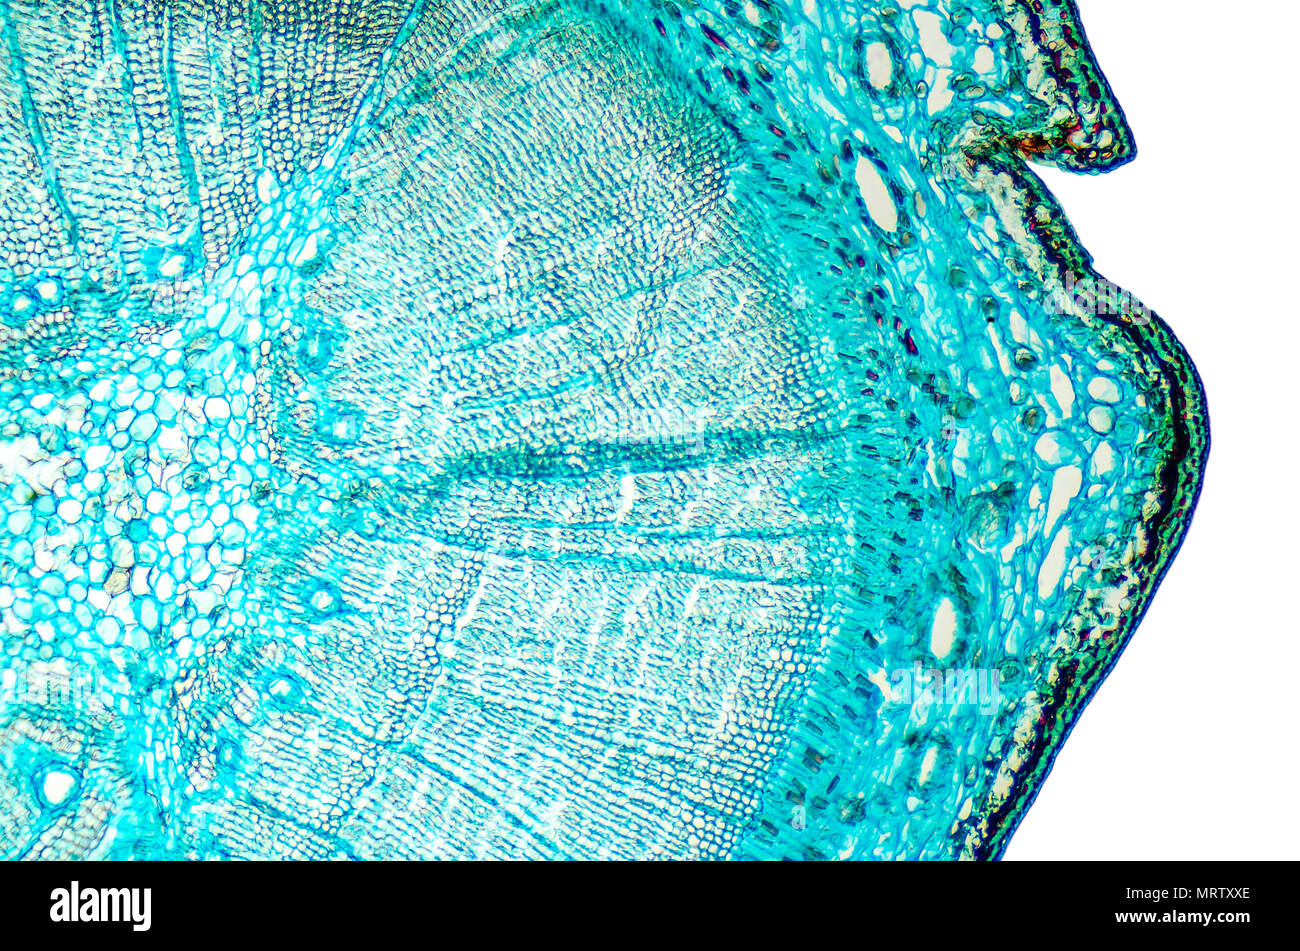 Pine legno matura e sezione trasversale. Microscopio a luce scorrevole con microsection di una conifera sempreverde in genere Pinus. Impianto di anatomia. Biologia. Foto. Foto Stock